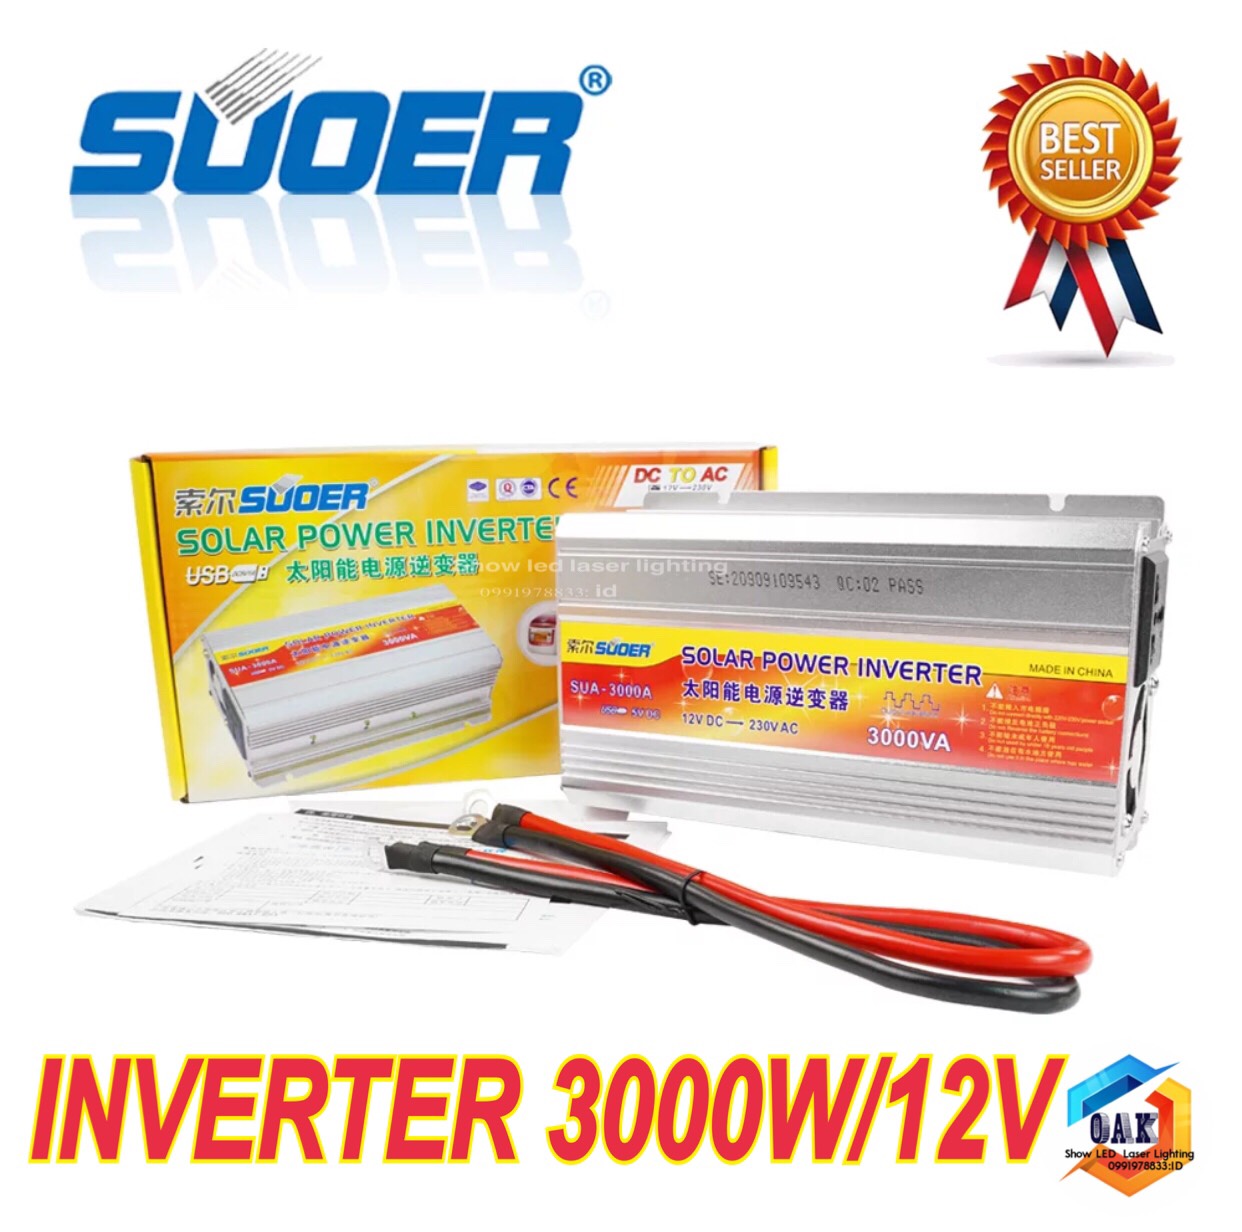 SUOER 12v 3000w  Inverter Modified Sine Wave อินเวอร์เตอร์ ตัวแปลงไฟ 12v เป็น 220v Suoer12V 3000W อินเวอร์เตอร์ 12V to 220V Portable Smart Power Inverter